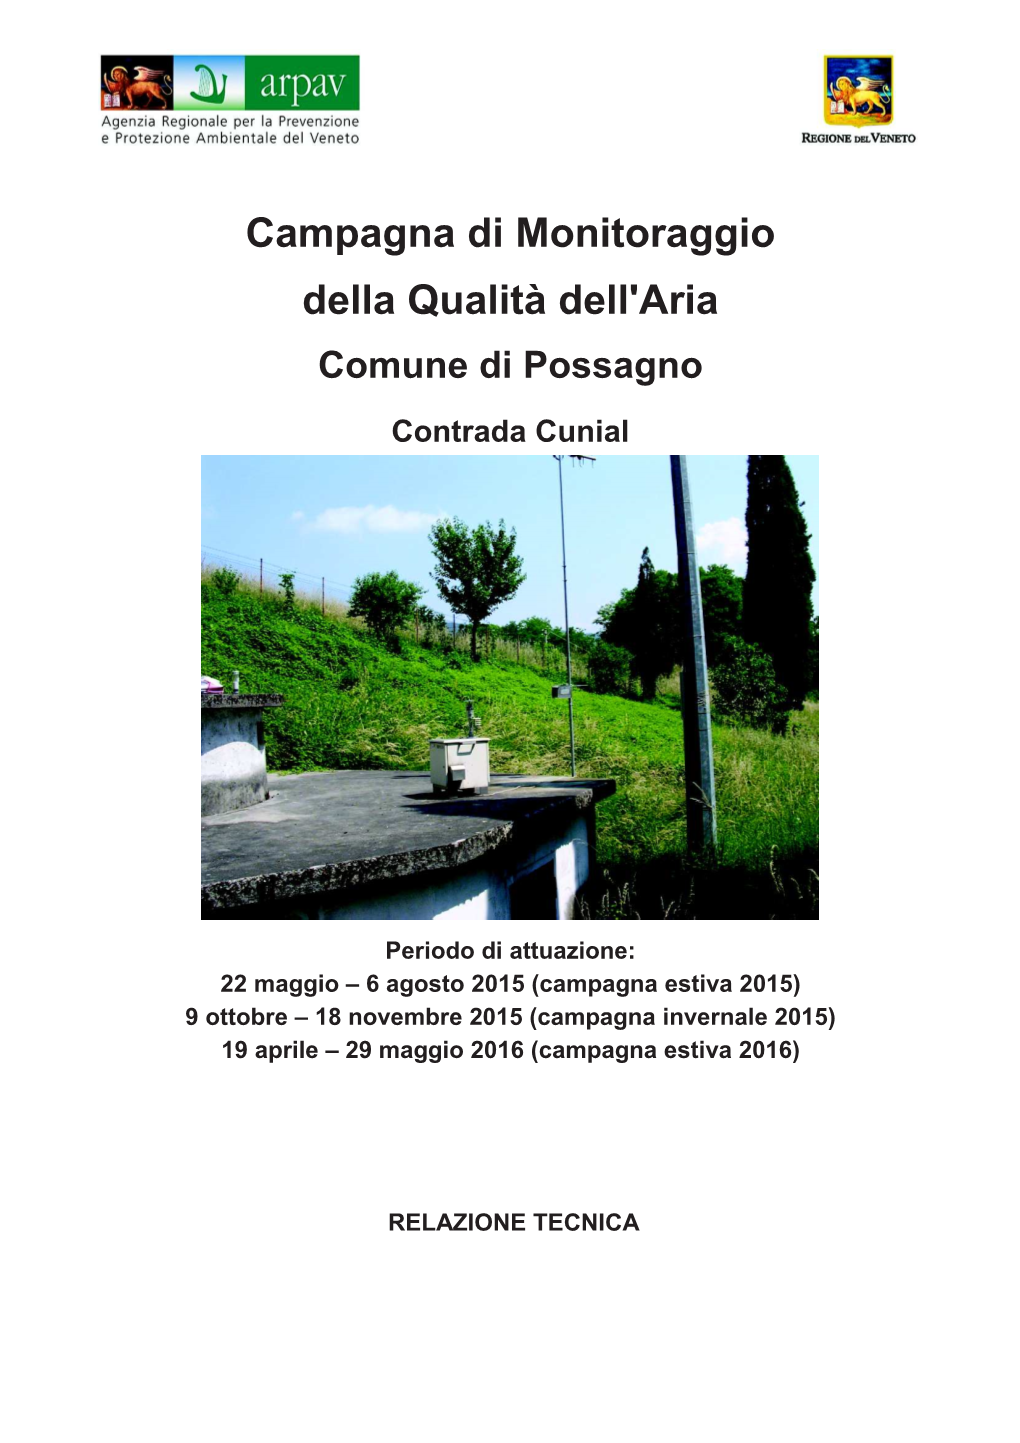 Comune Di Possagno (2015-2016)